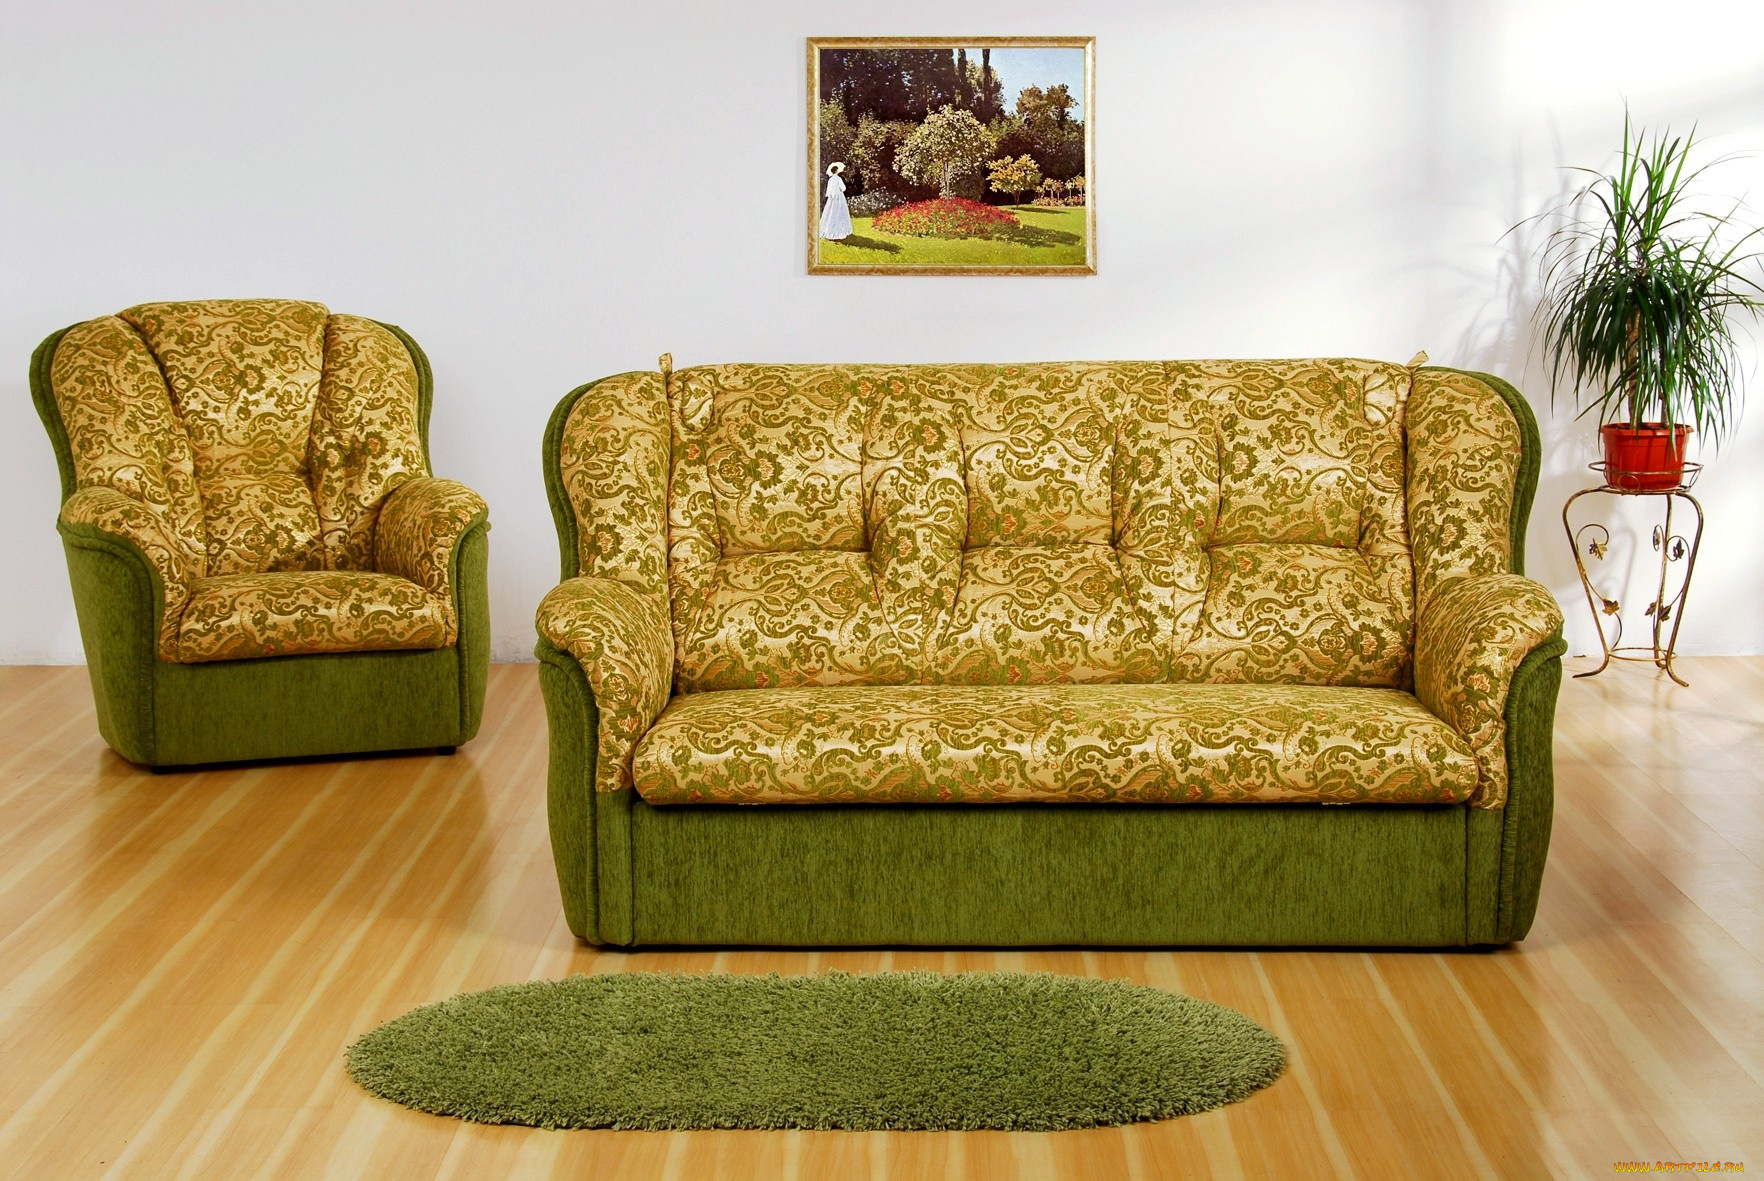 интерьер, мебель, диван, кресло, коврик, золотистый, зеленый